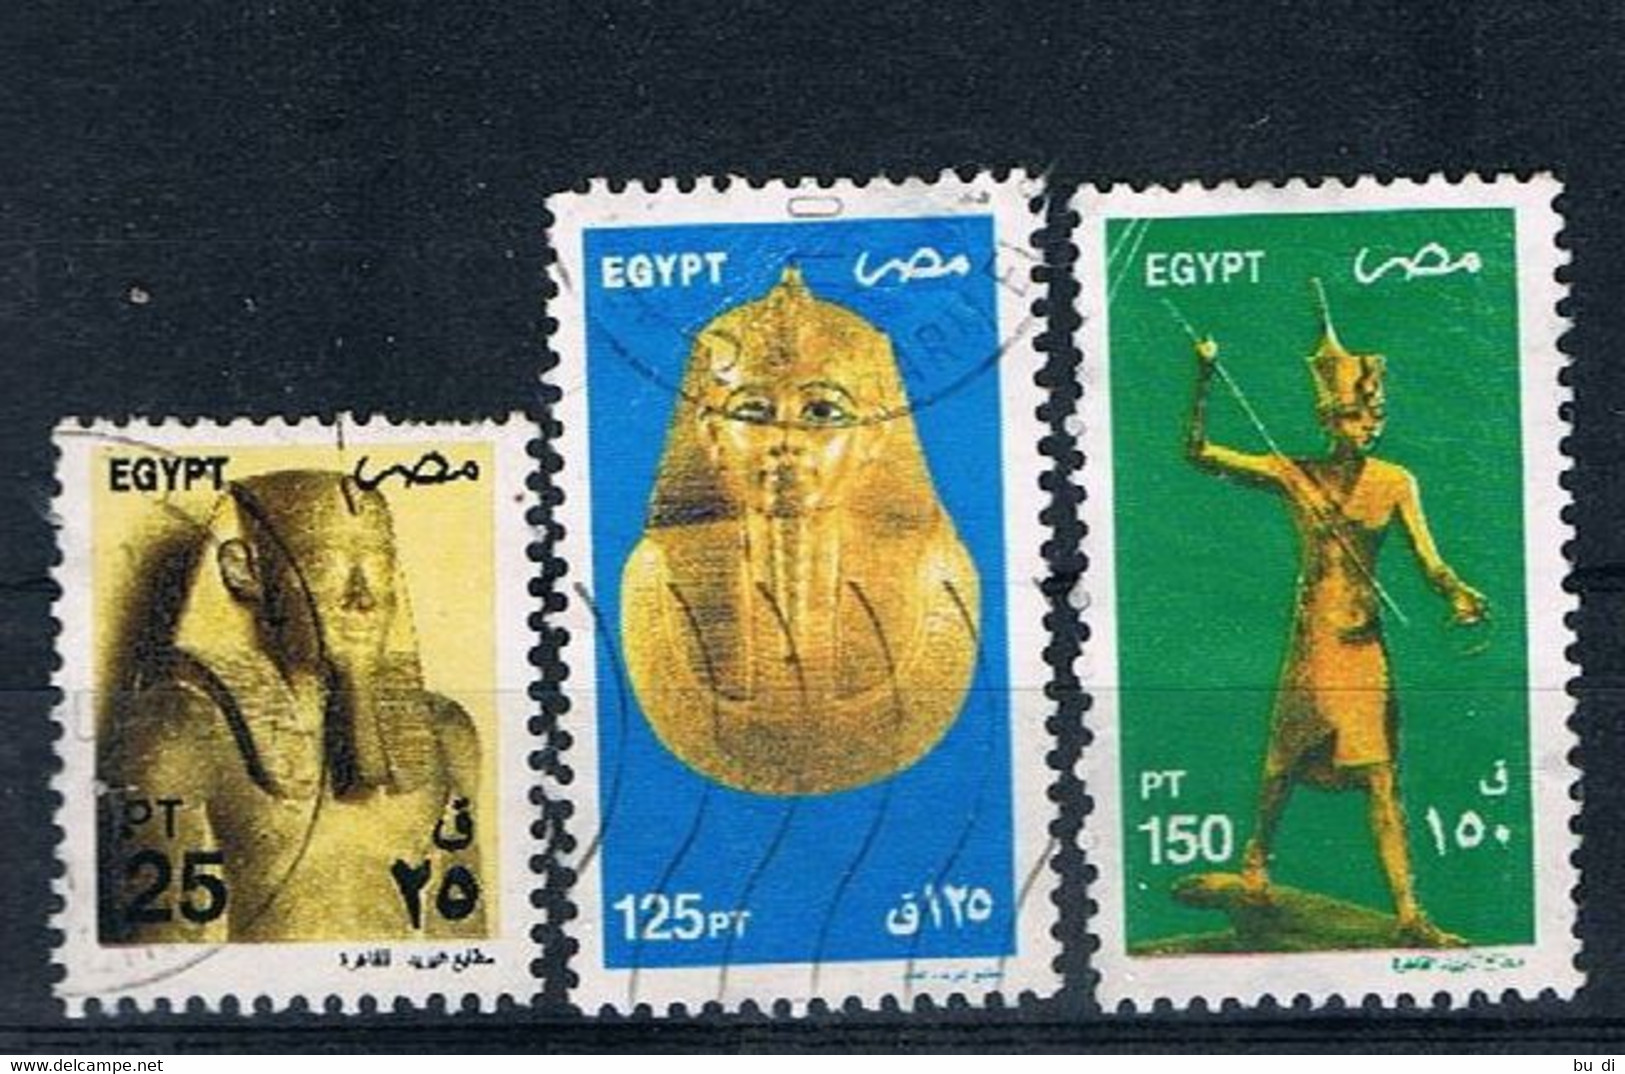 Ägypten - Egypt - 2081 2089 2090 - ägyptische Kunst - Statue, Totenmaske, U.a. Tut-ench Amun - Used Stamps